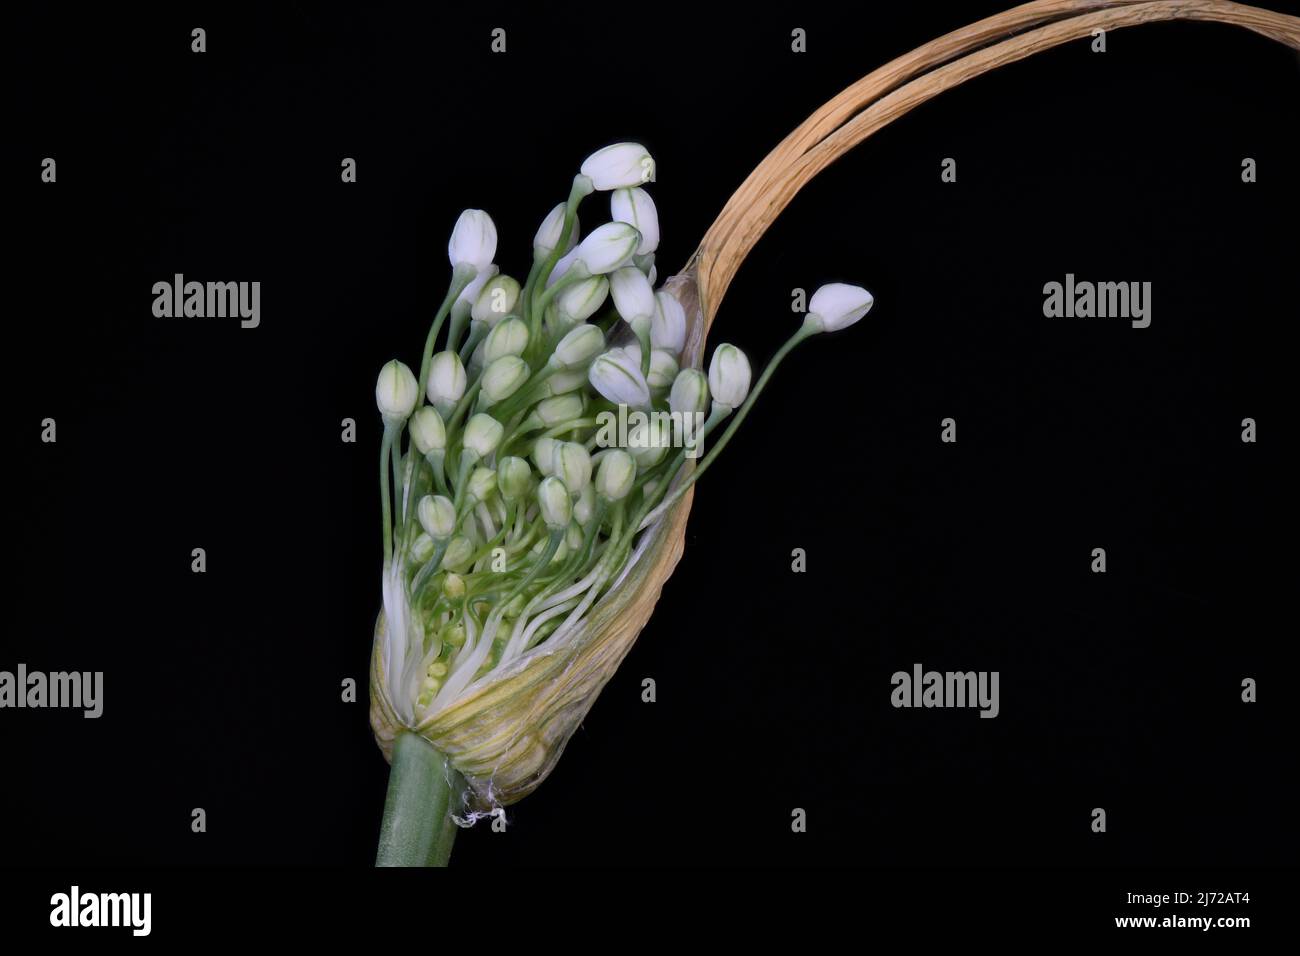 Allium carinatum flower bud Stock Photo